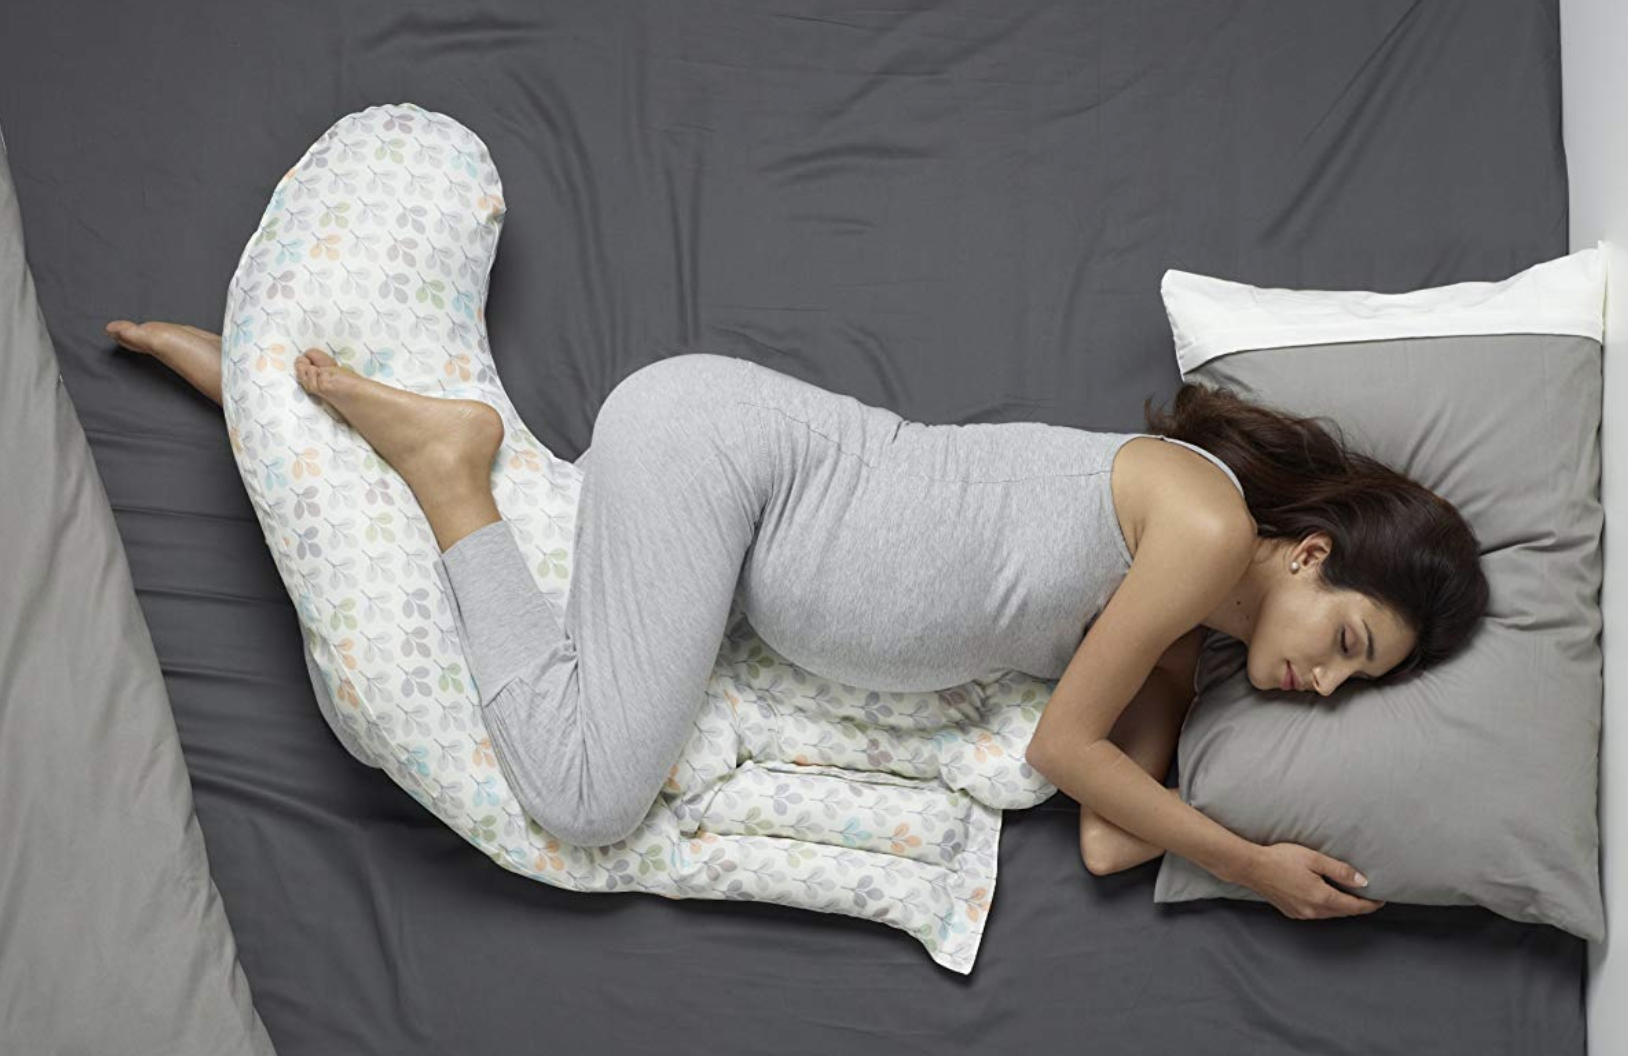 Подушка Chicco total body Pillow. Позы сна для беременных. Подушка для беременных 3 триместр. Интересные позы для сна.